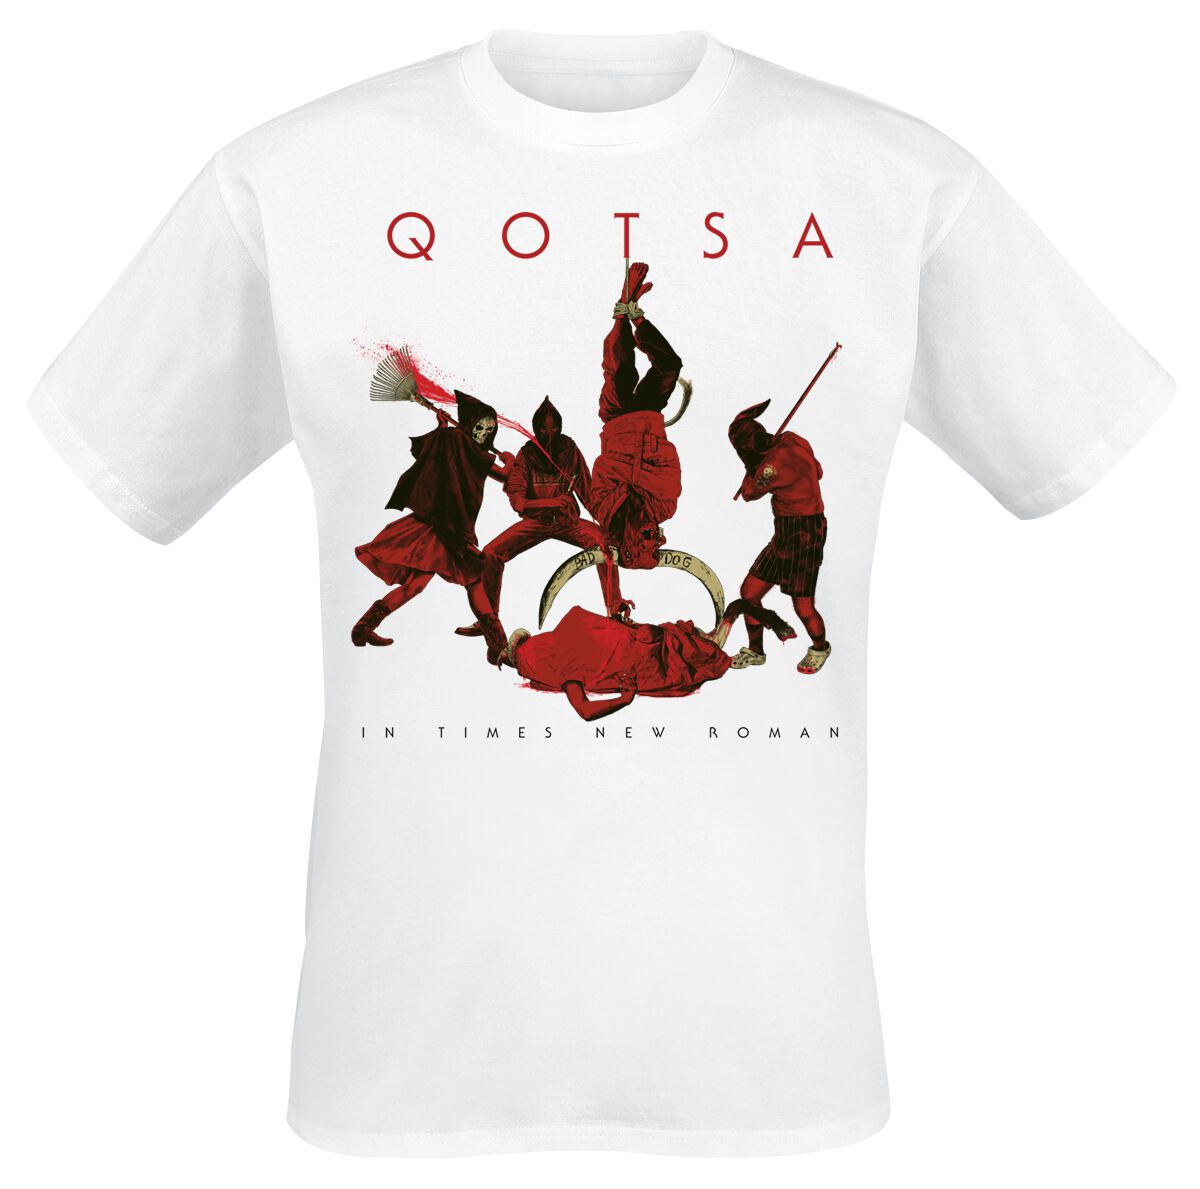 Queens Of The Stone Age T-Shirt - In Times New Roman - Emotion Sickness - S bis 3XL - für Männer - Größe L - weiß  - Lizenziertes Merchandise!